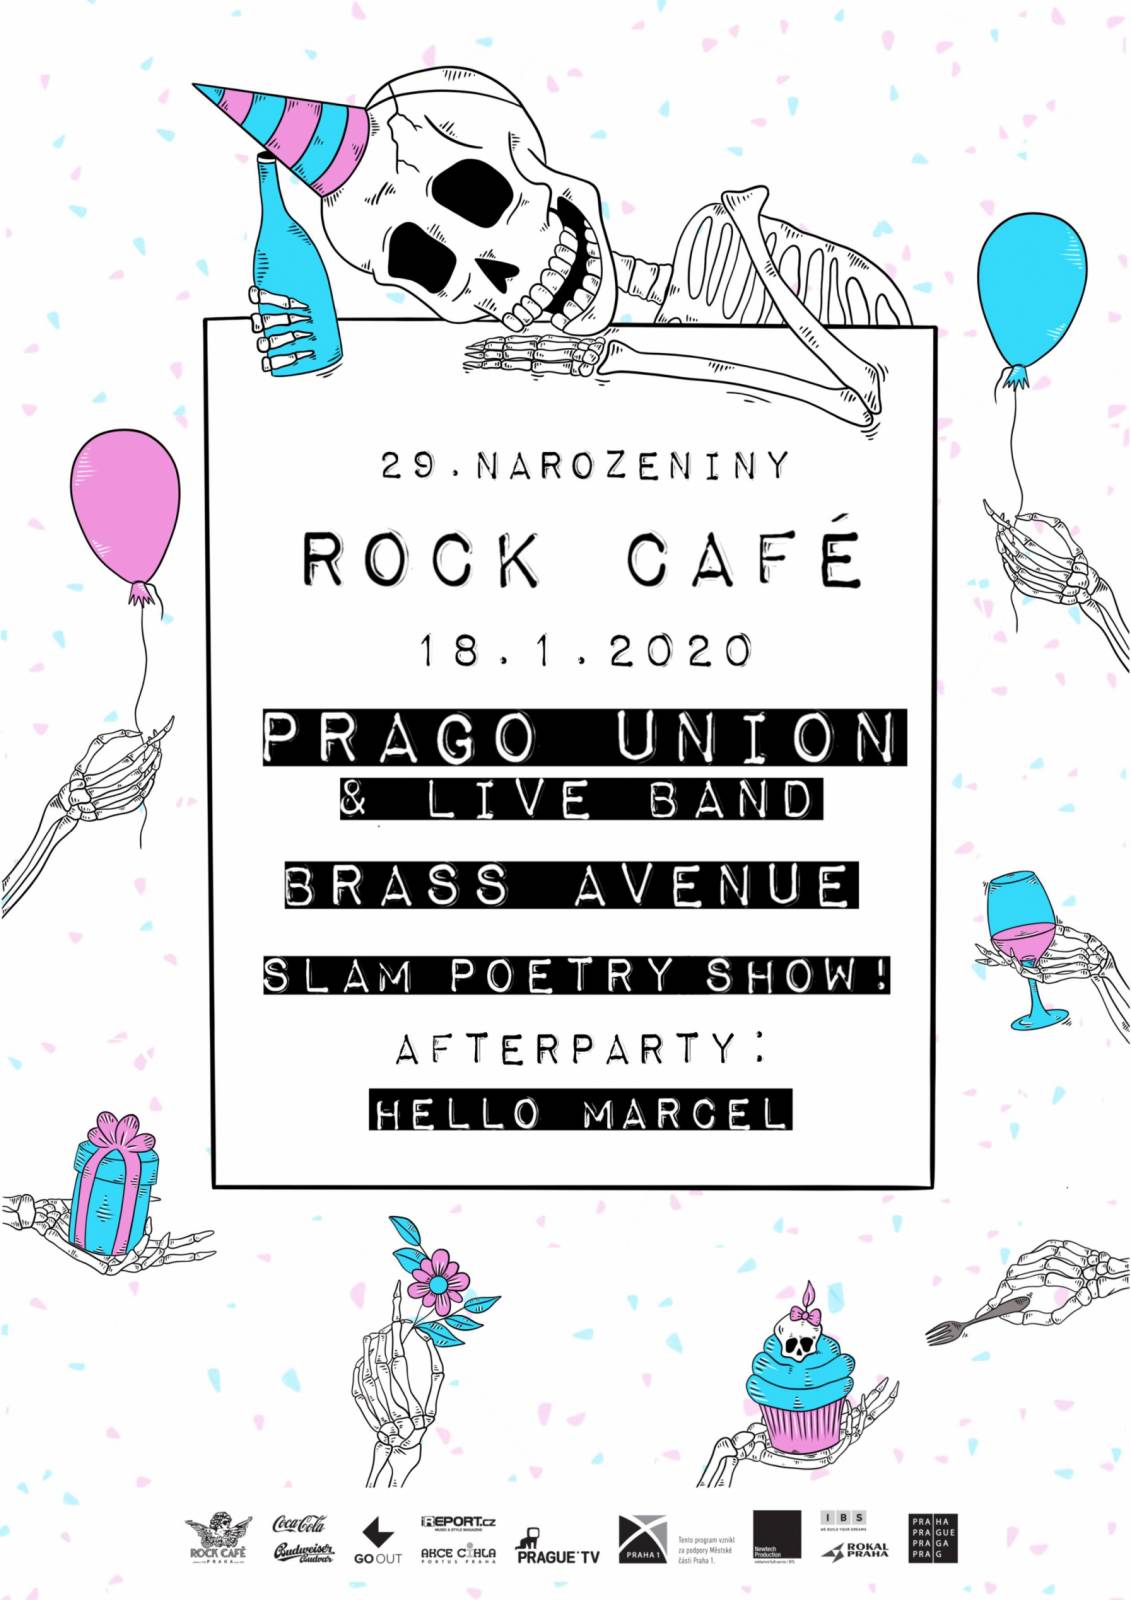 SOUTĚŽ: Narozeniny Rock Café